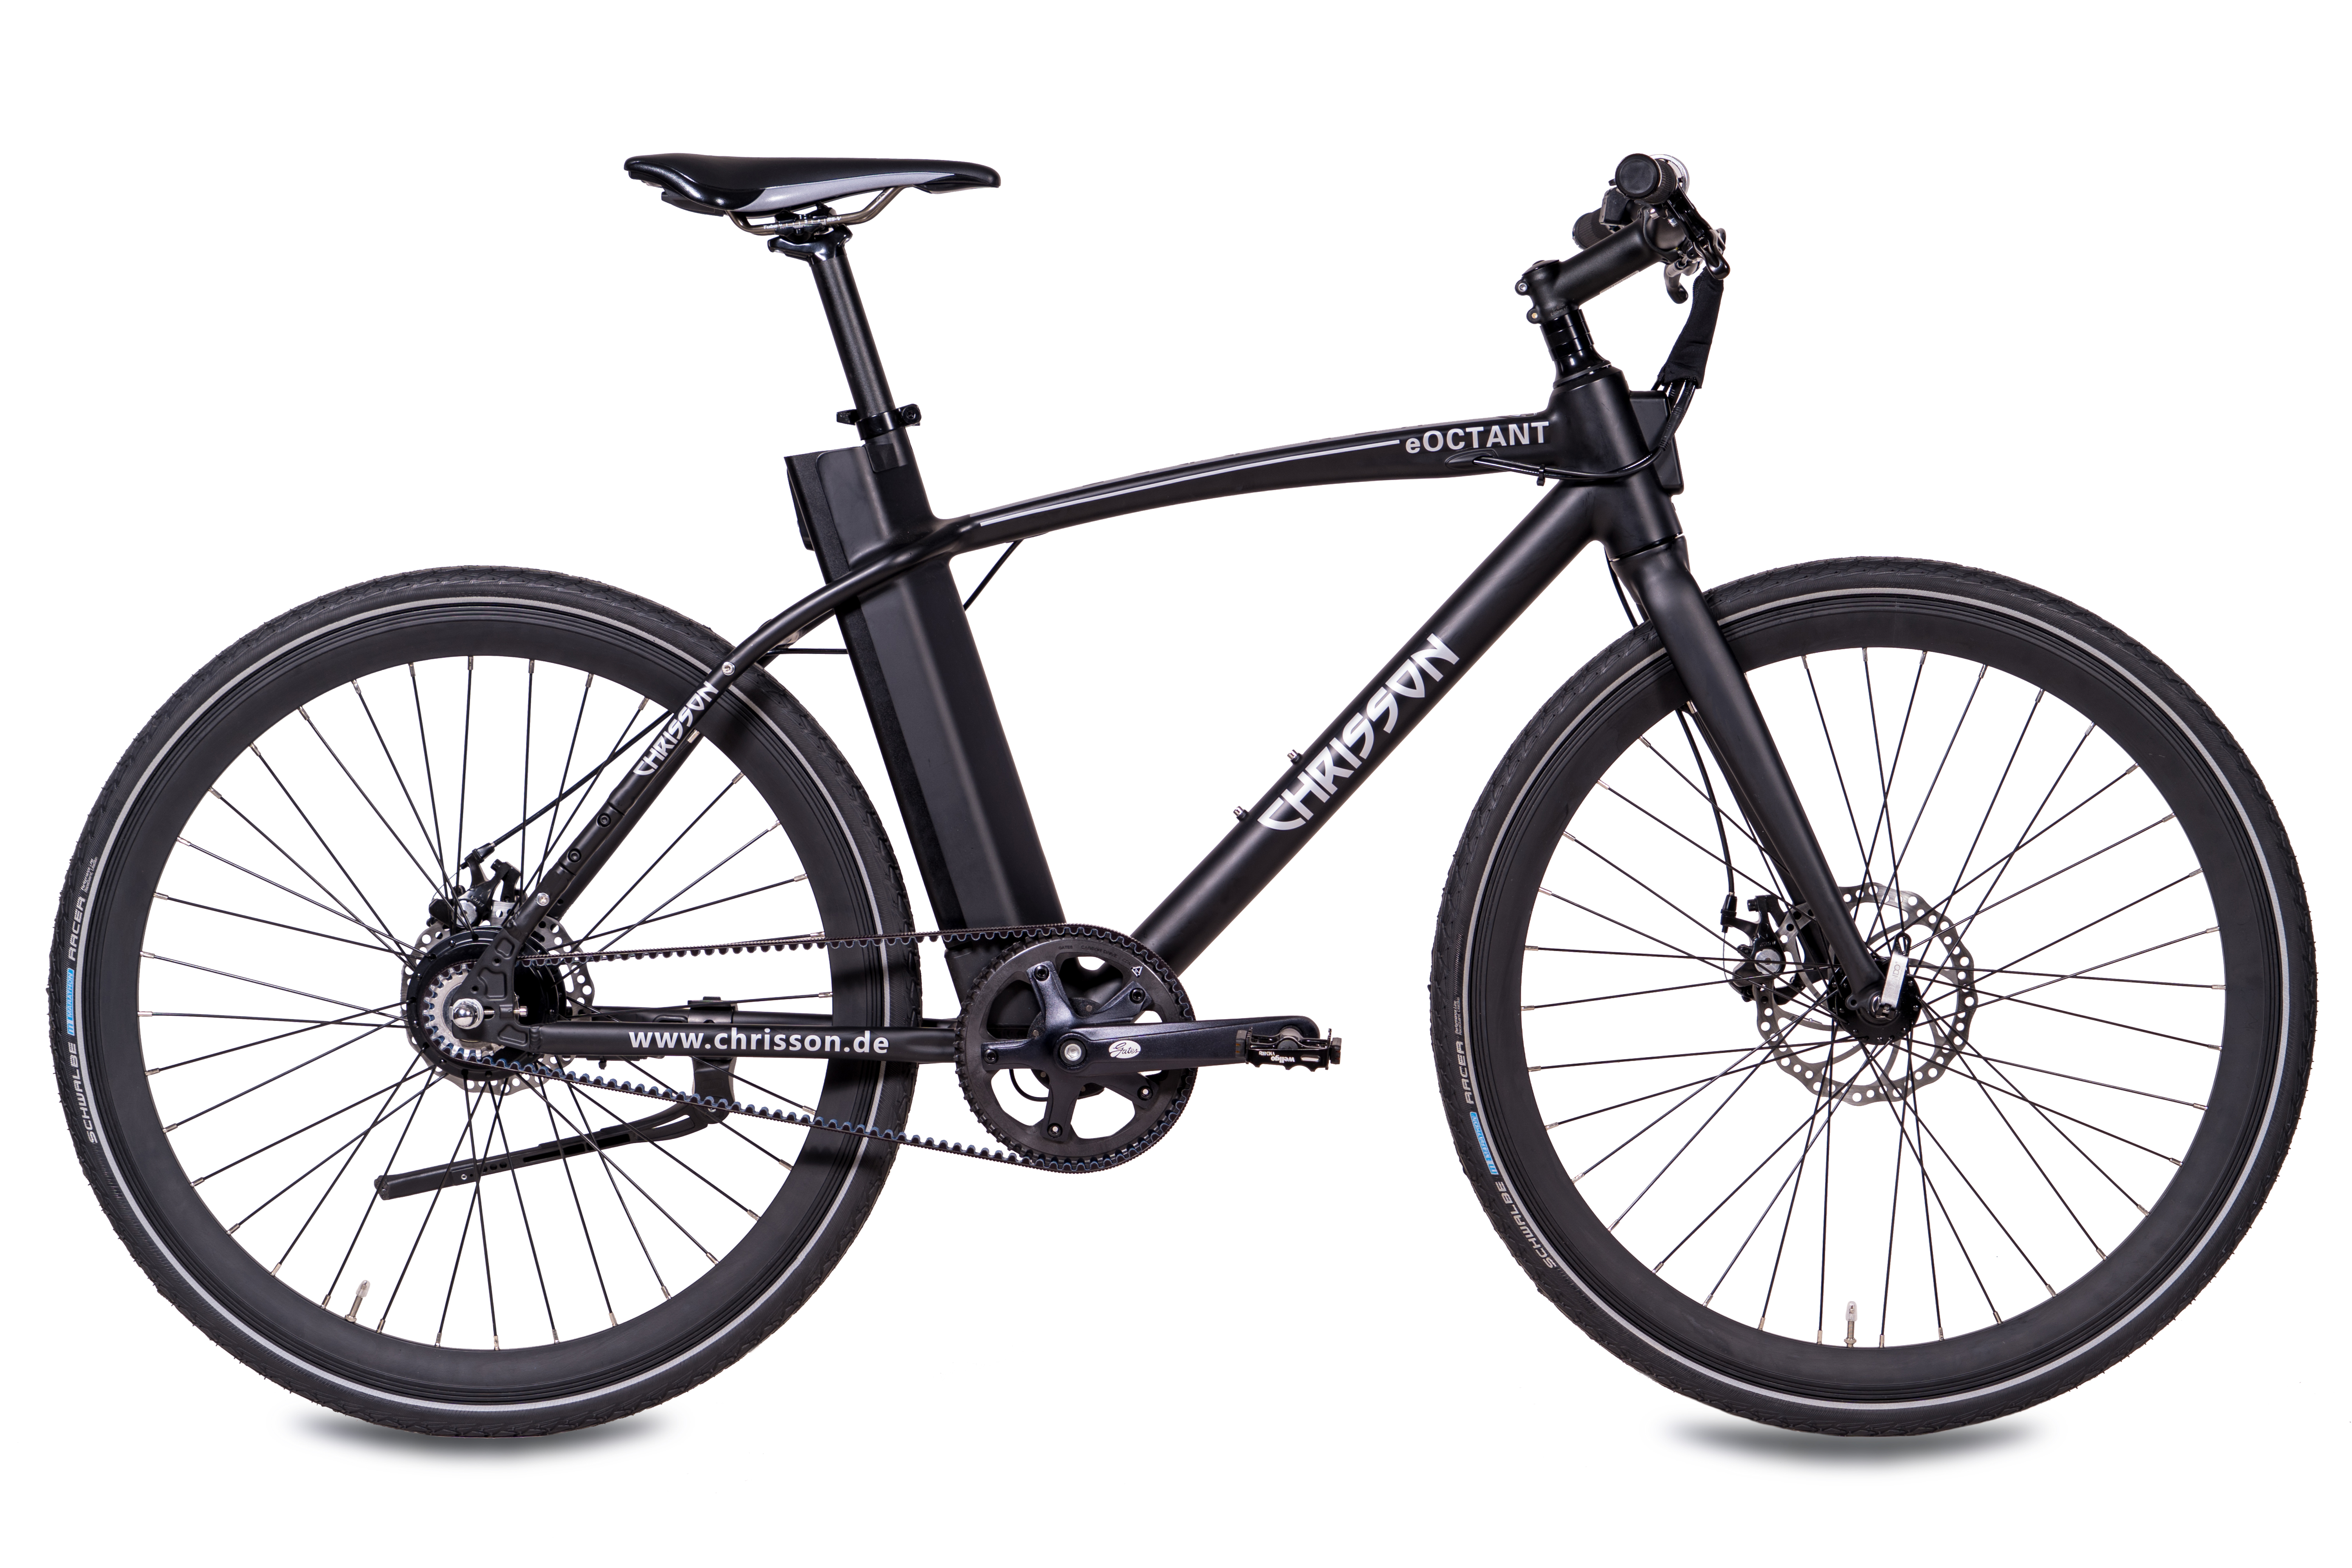 28 367 Urbanbike Riemenantrieb cm, Unisex-Rad, Rahmenhöhe: eOctant schwarz) 52 Wh, (Laufradgröße: Zoll, CHRISSON